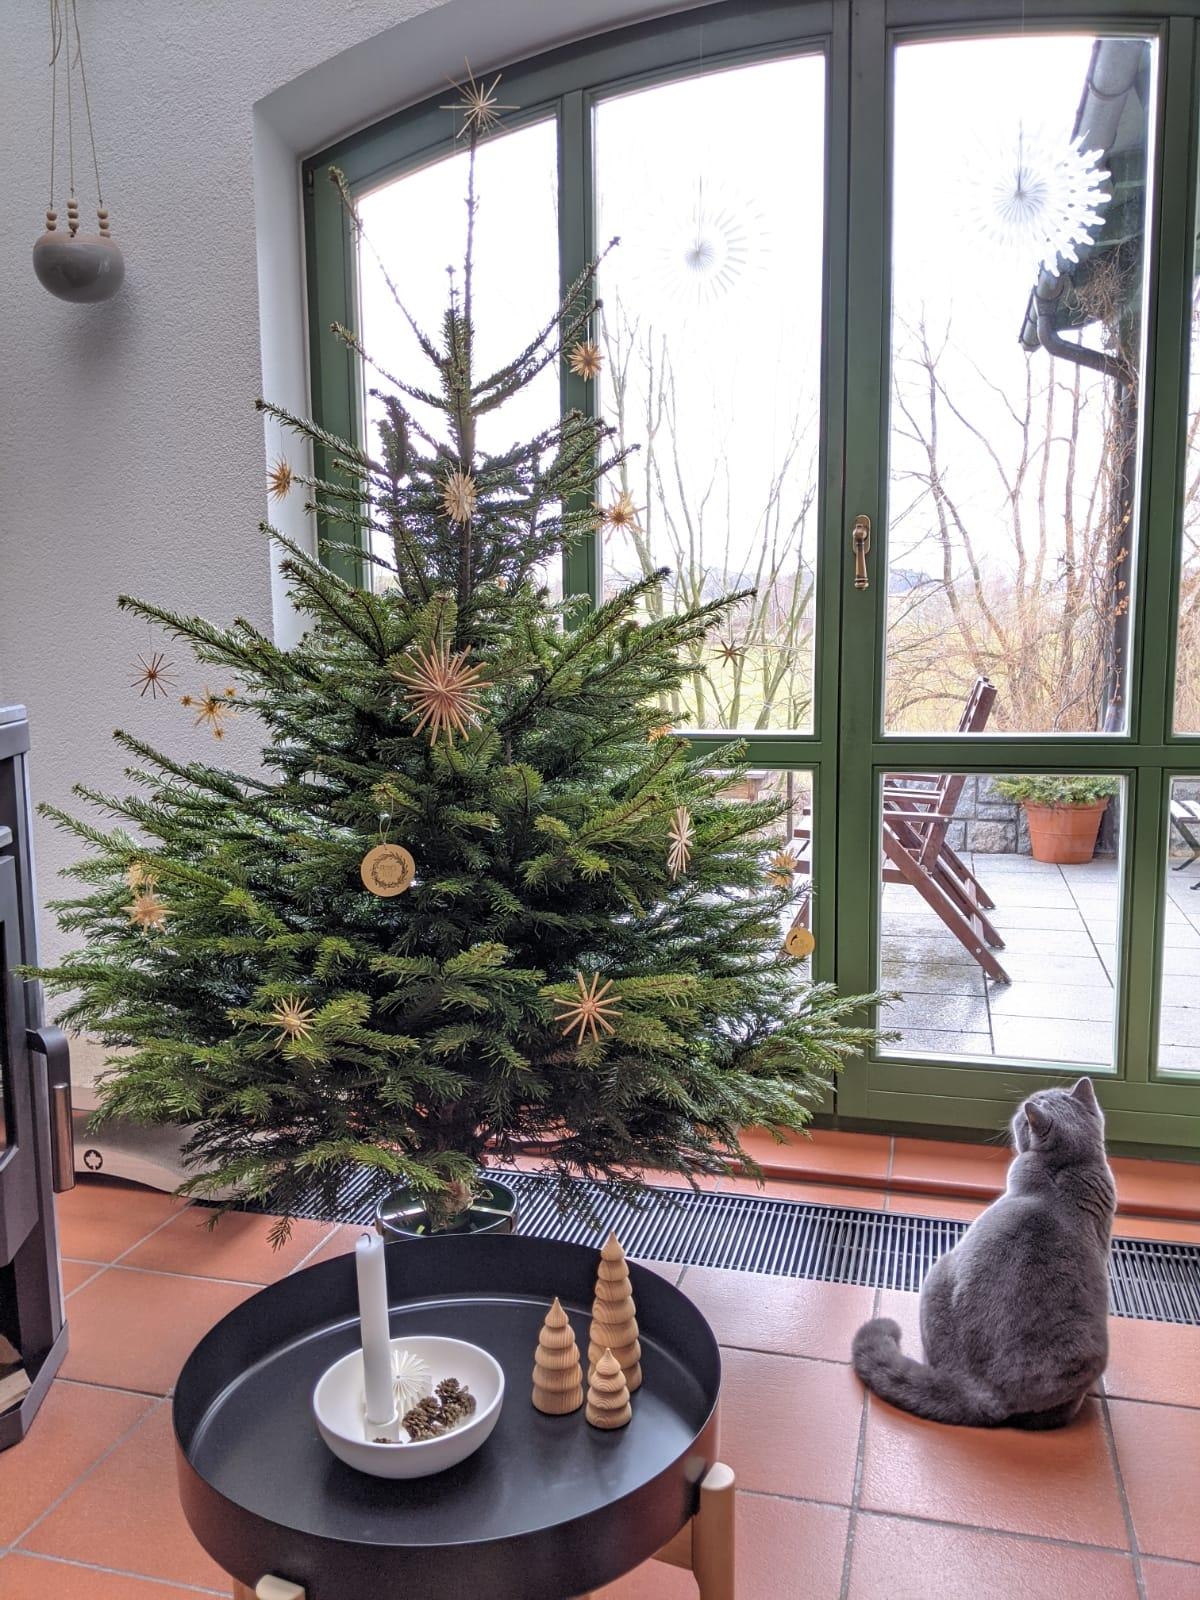 Warten auf den Weihnachtsmann😽 ...
#weihnachten #weihnachtsbaum #weihnachtsdeko #esszimmer #katze